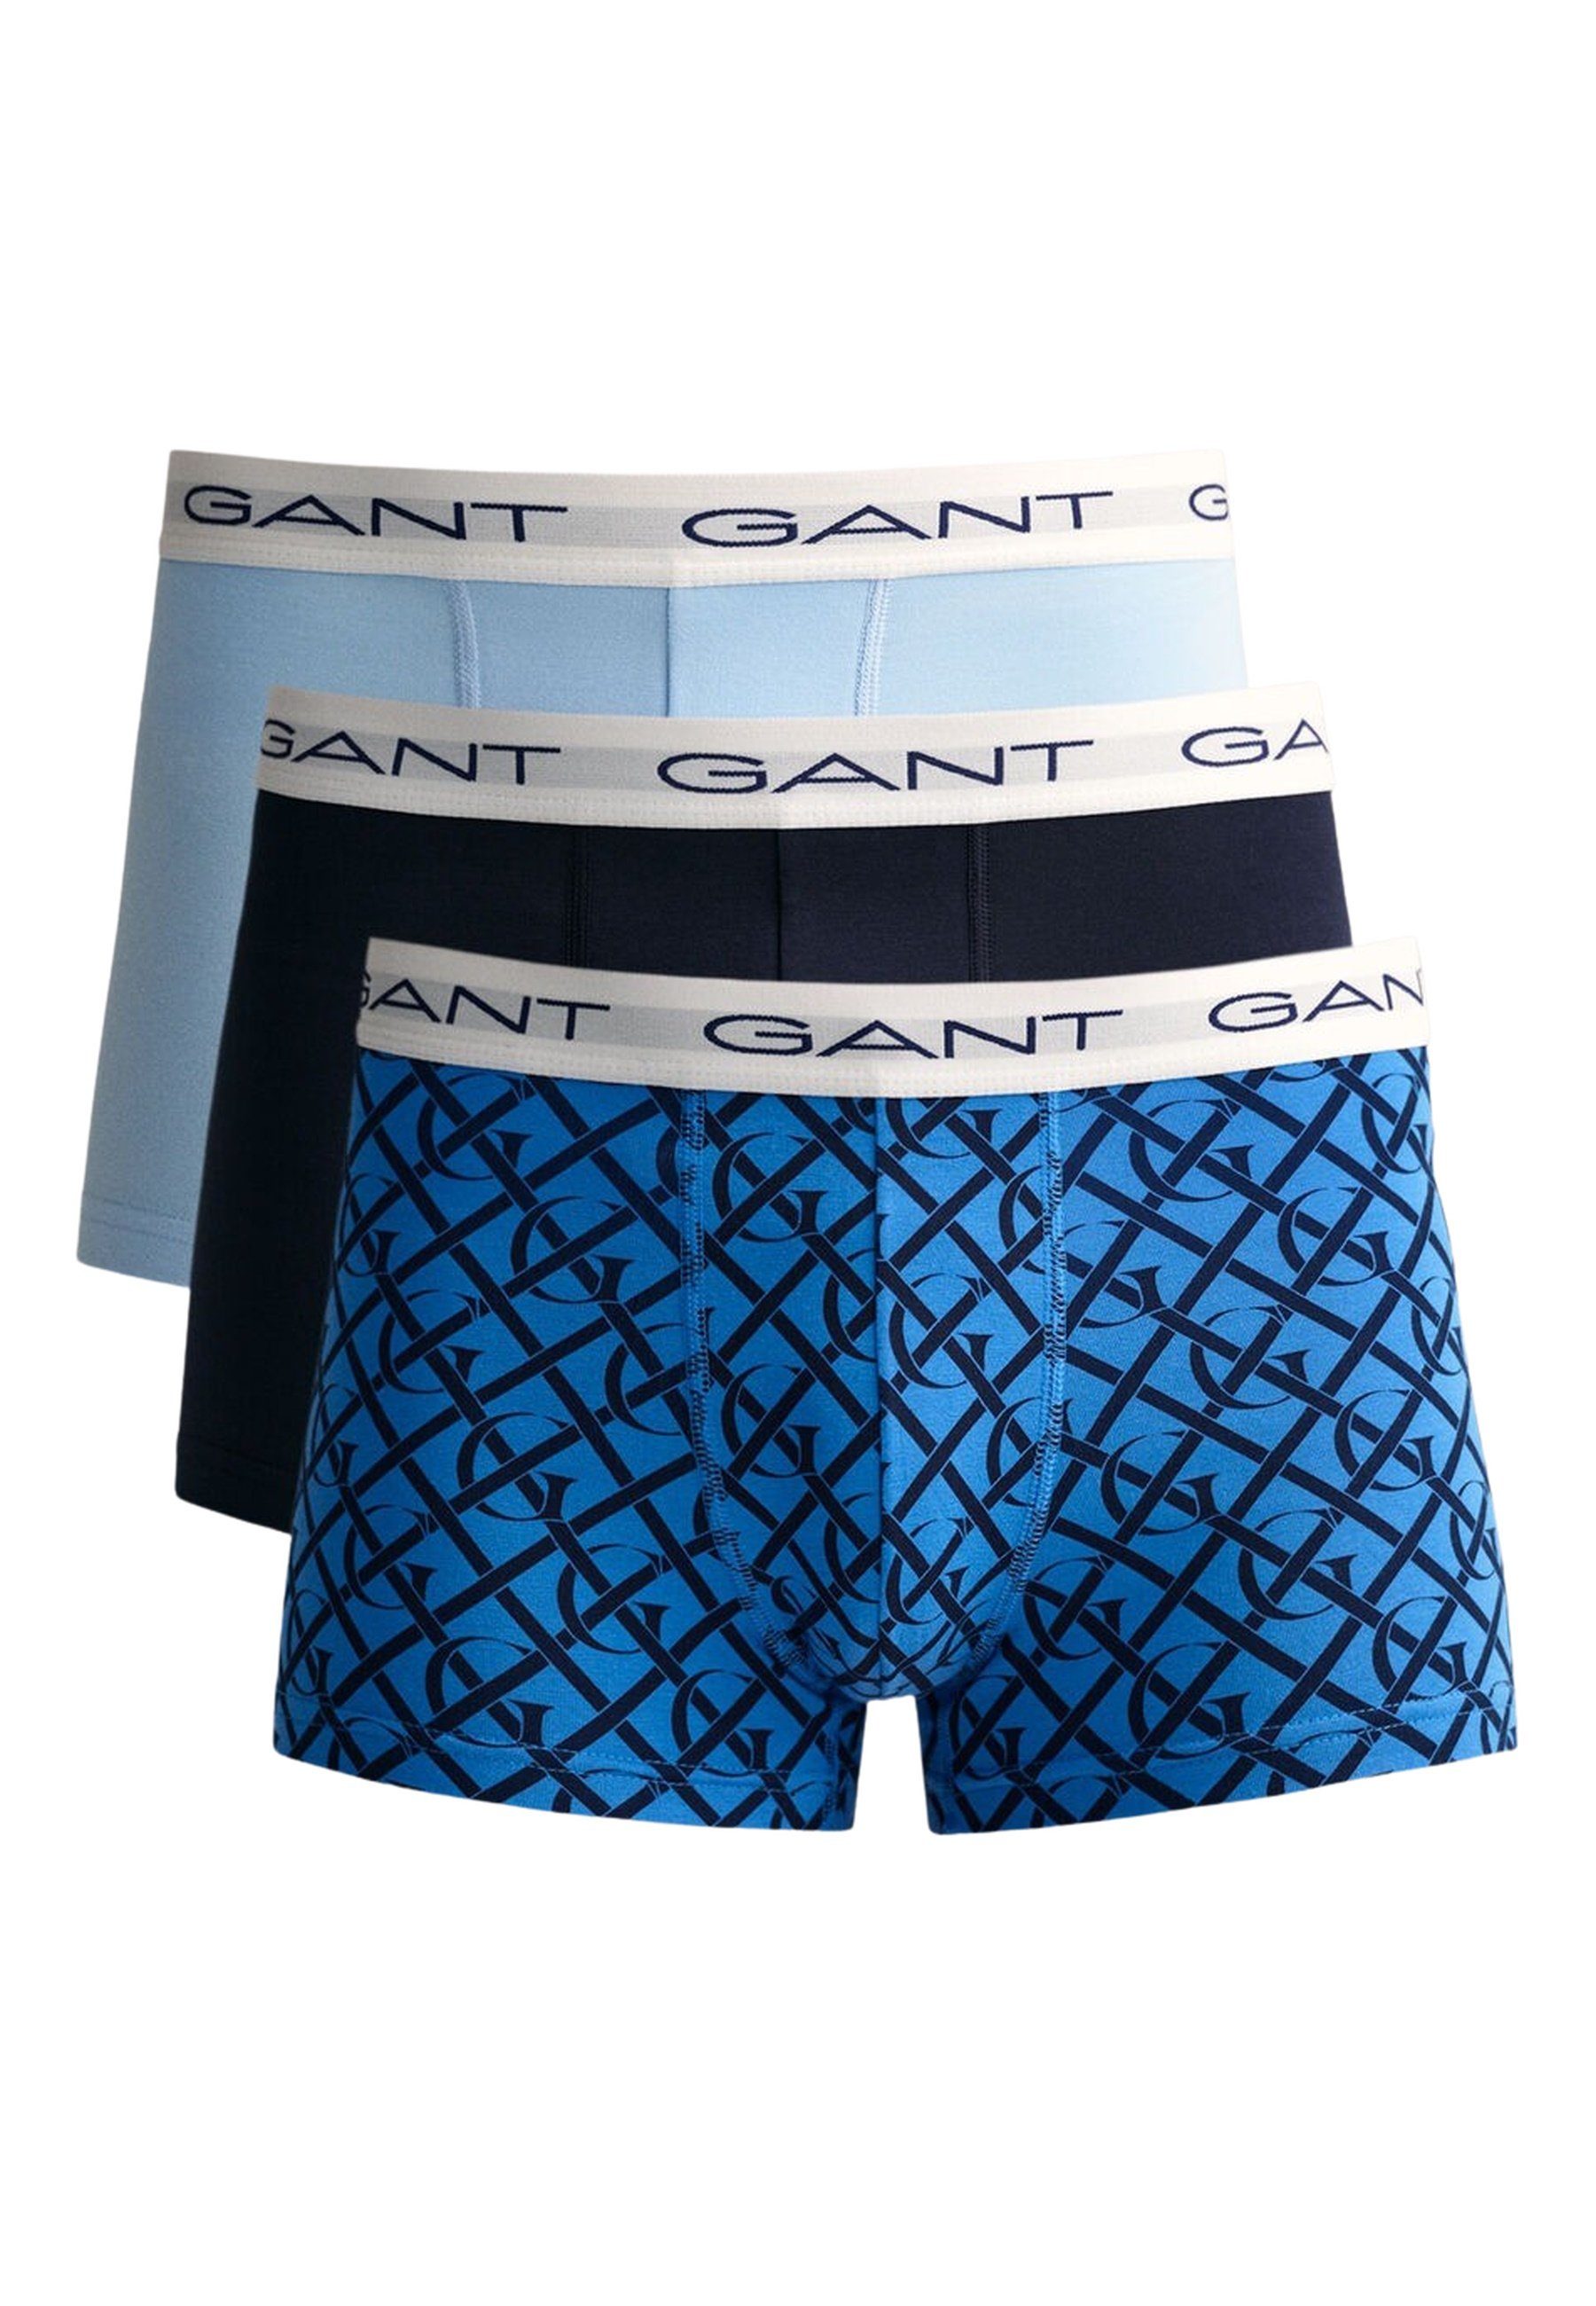 Gant 3er G Boxershorts PRINT MONOGRAM Pack TRUNK Unterhose